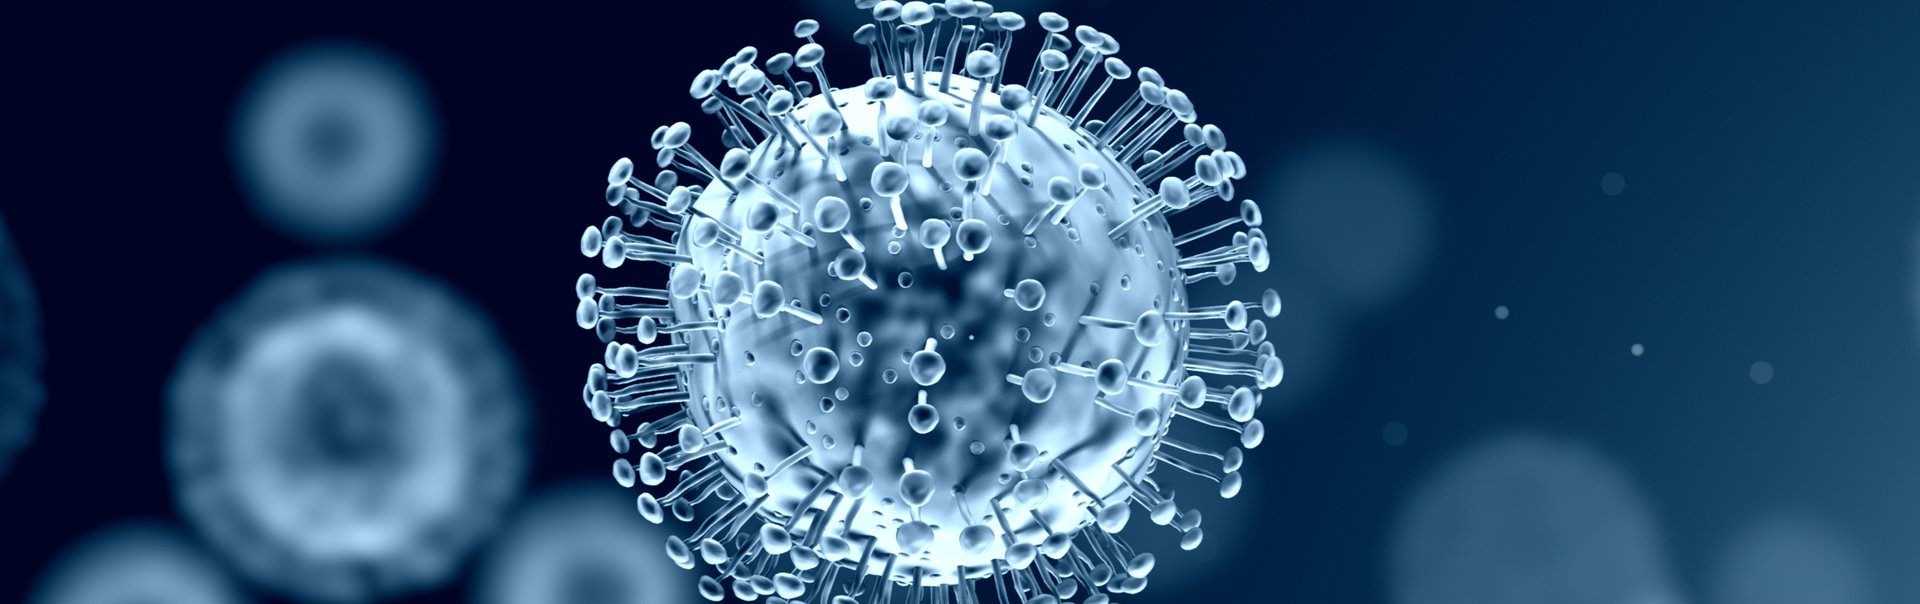 Nahaufnahme eines Virus als Symbolbild für den Coronavirus